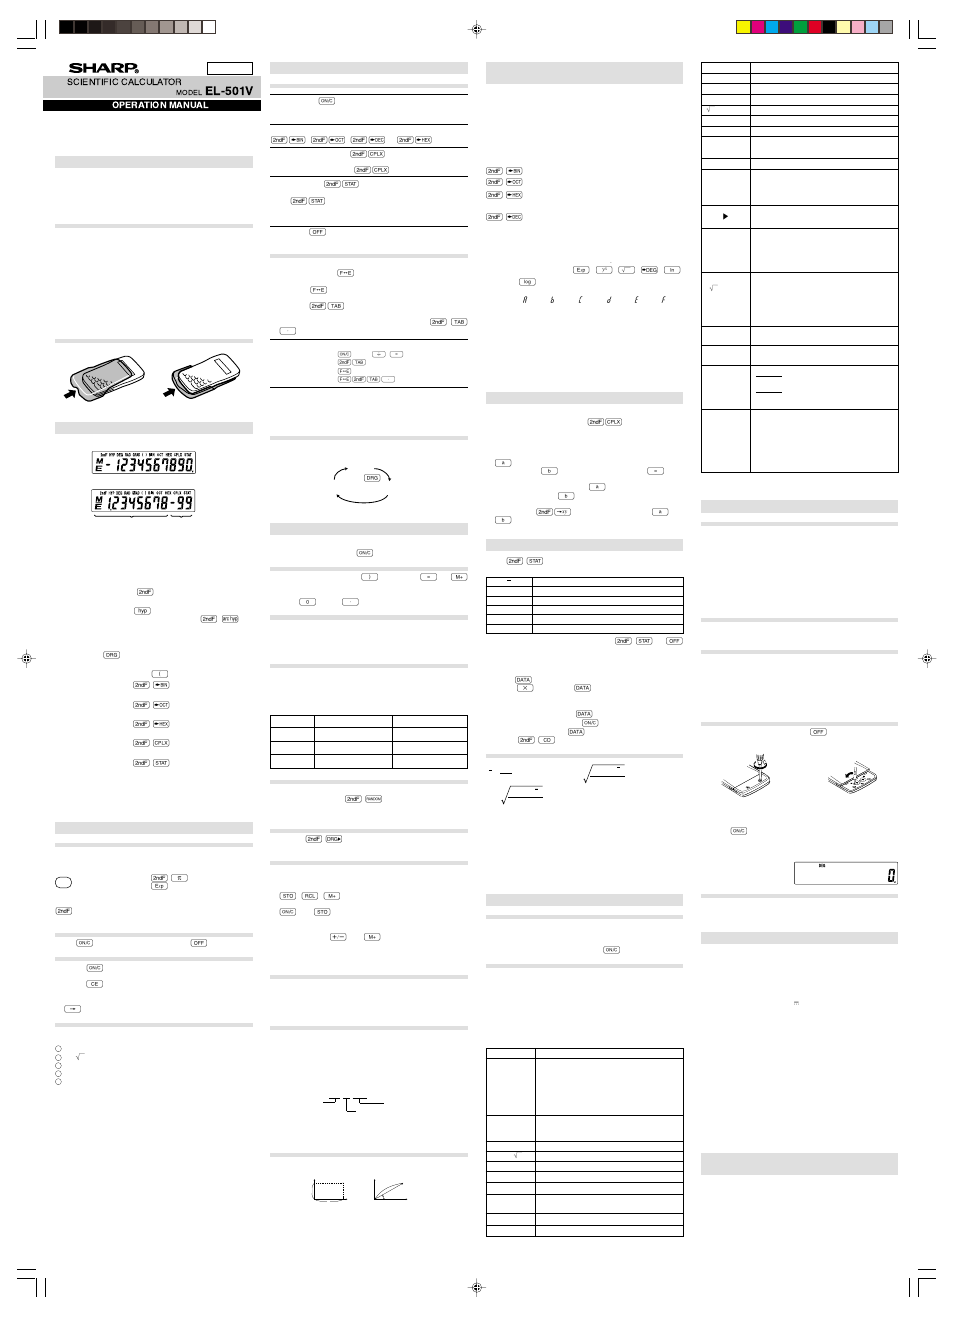 Sharp el-501v User Manual | 1 page